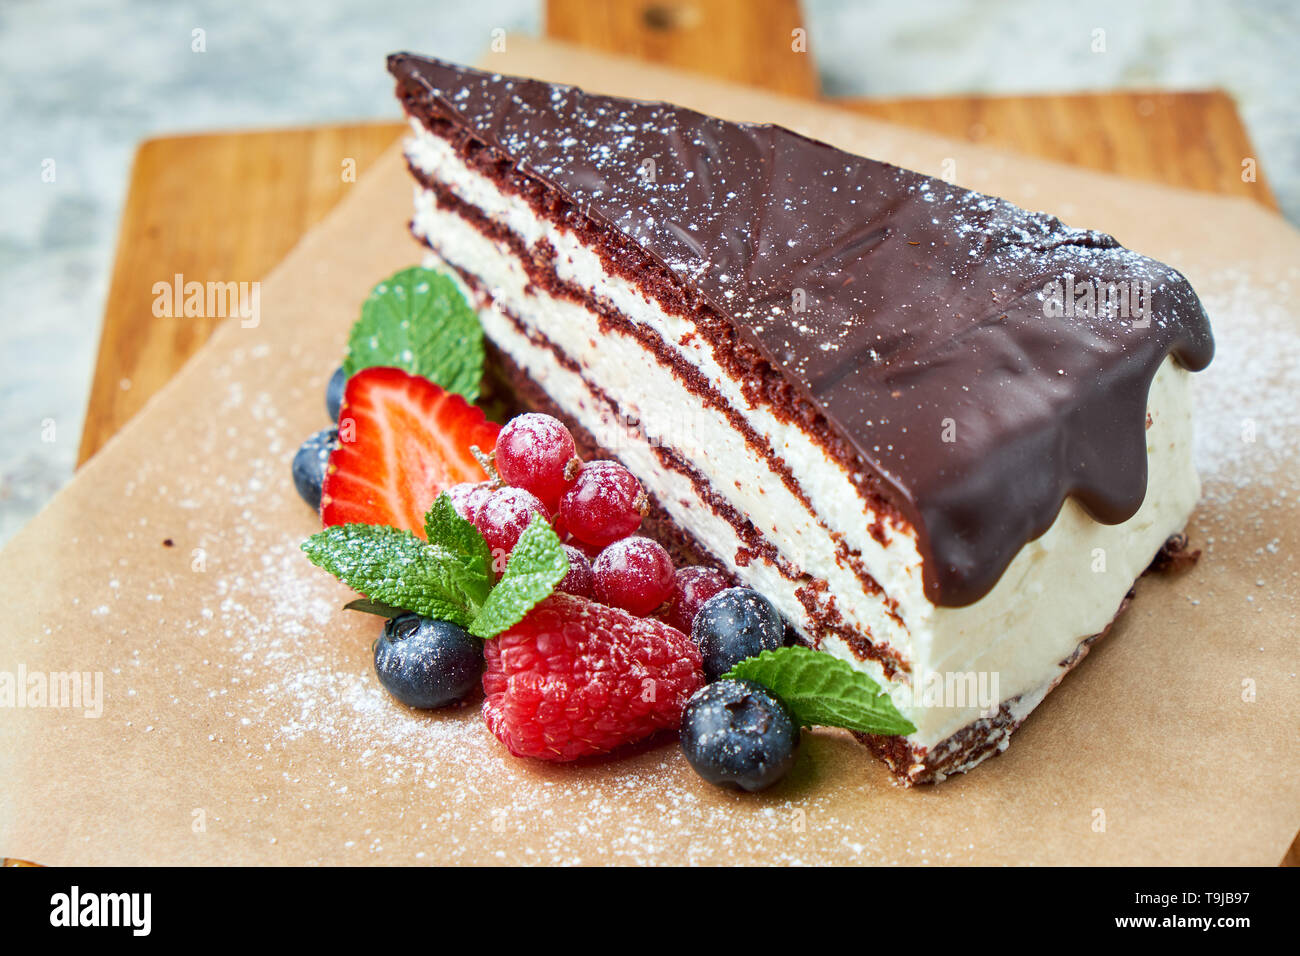 Une tranche de gâteau au chocolat décoré de petits fruits sur une planche de bois. Fond texturé gris. Beaux plats de service. Le Dessert. La chaîne alimentaire Banque D'Images